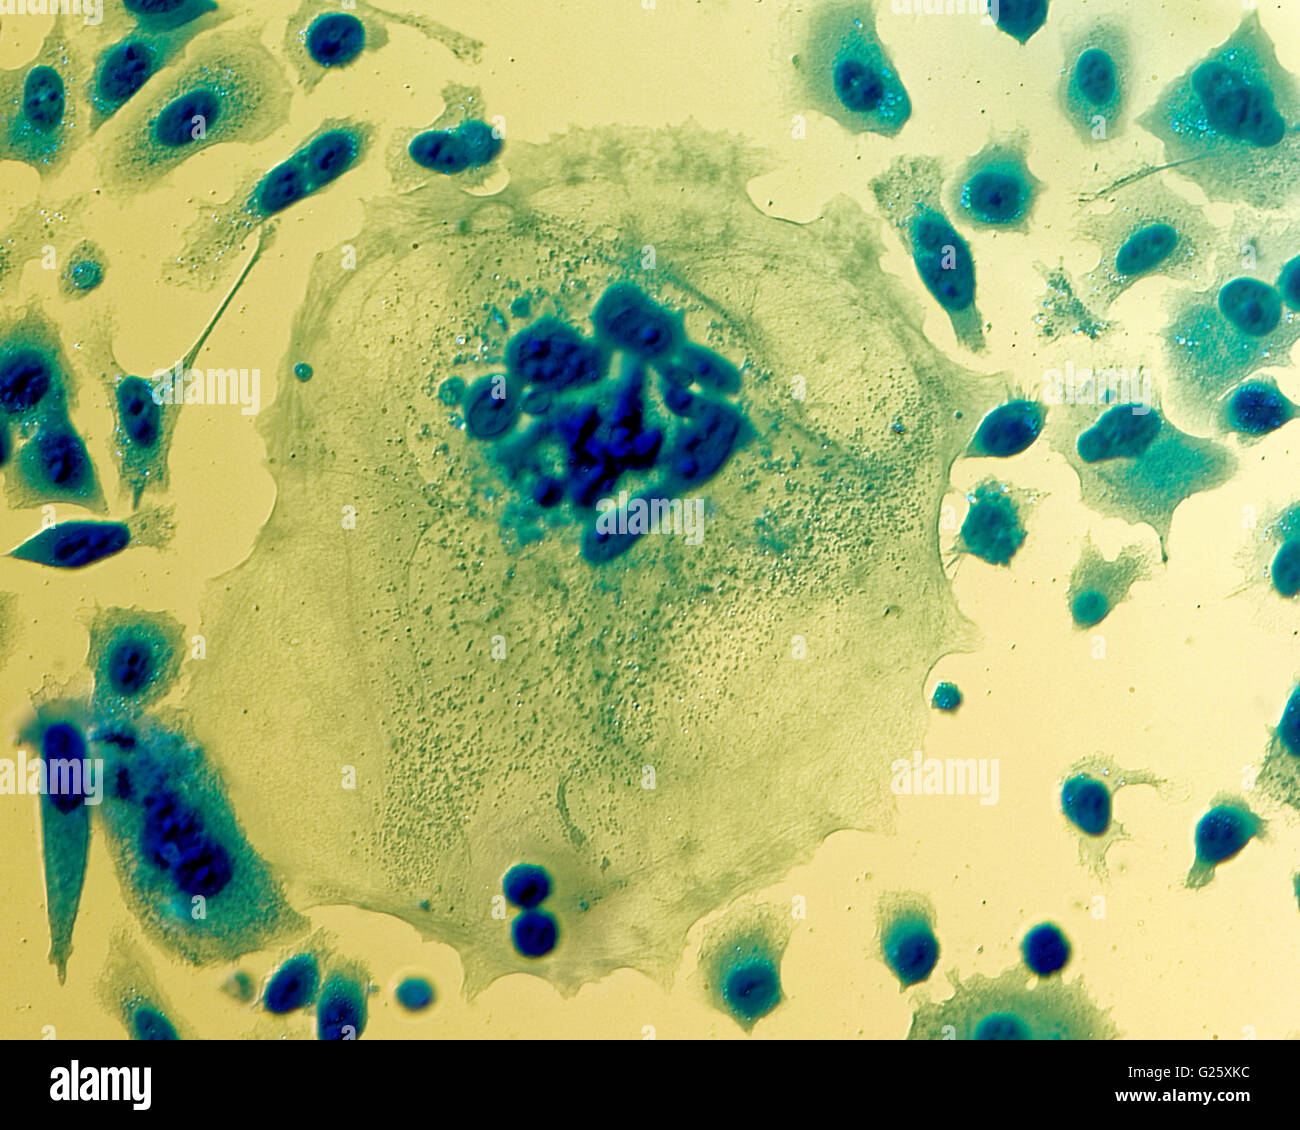 Umana PC-3 di cellule di cancro della prostata, colorati con blu Coomassie, sotto differencial interference contrast microscopio. Foto Stock